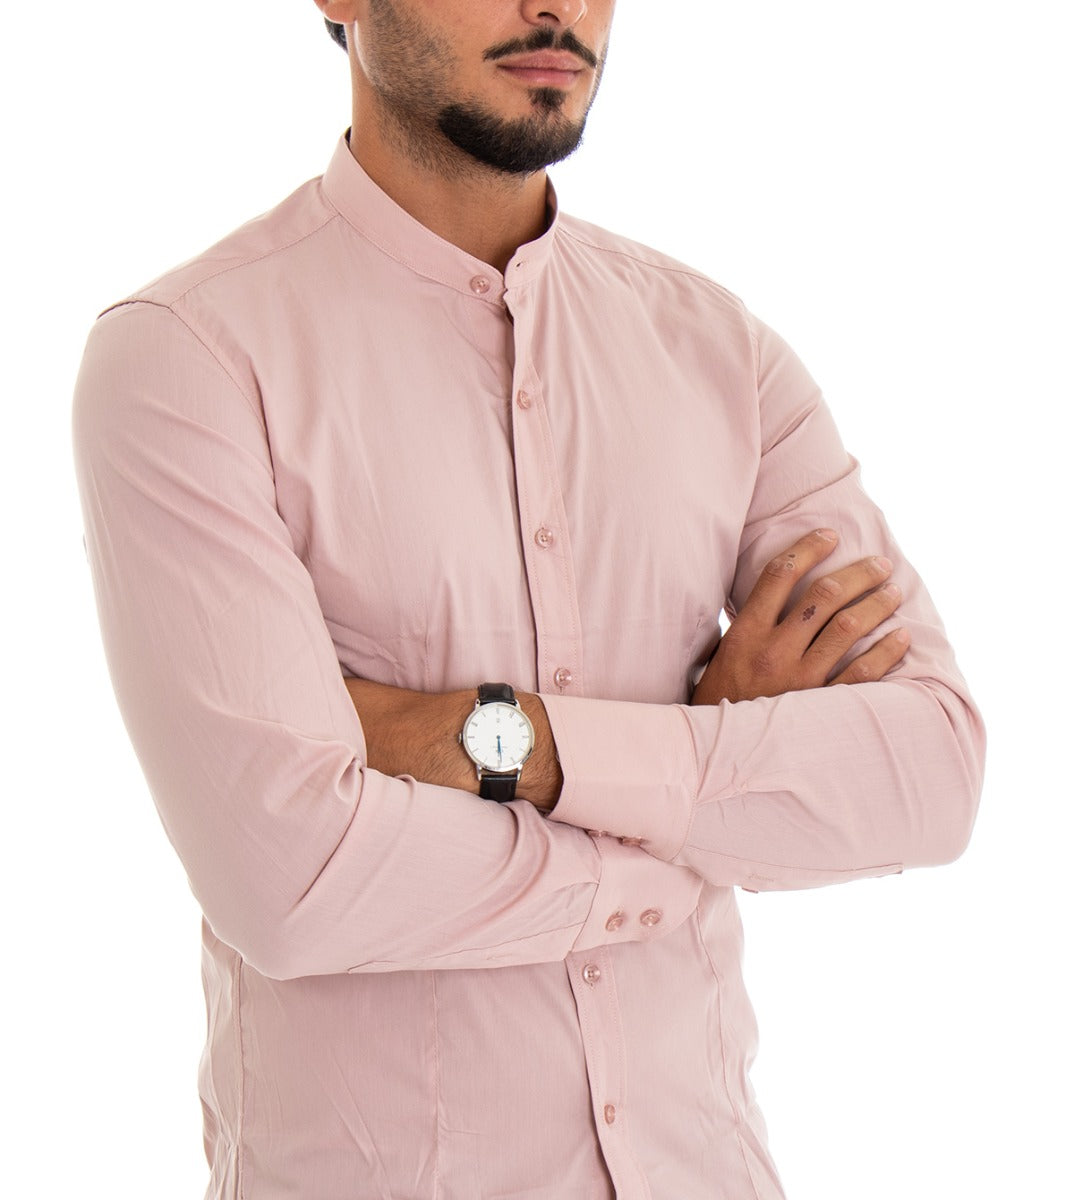 Camicia Uomo Collo Coreano Manica Lunga Slim Fit Basic Casual Cotone Rosa GIOSAL-C1817A